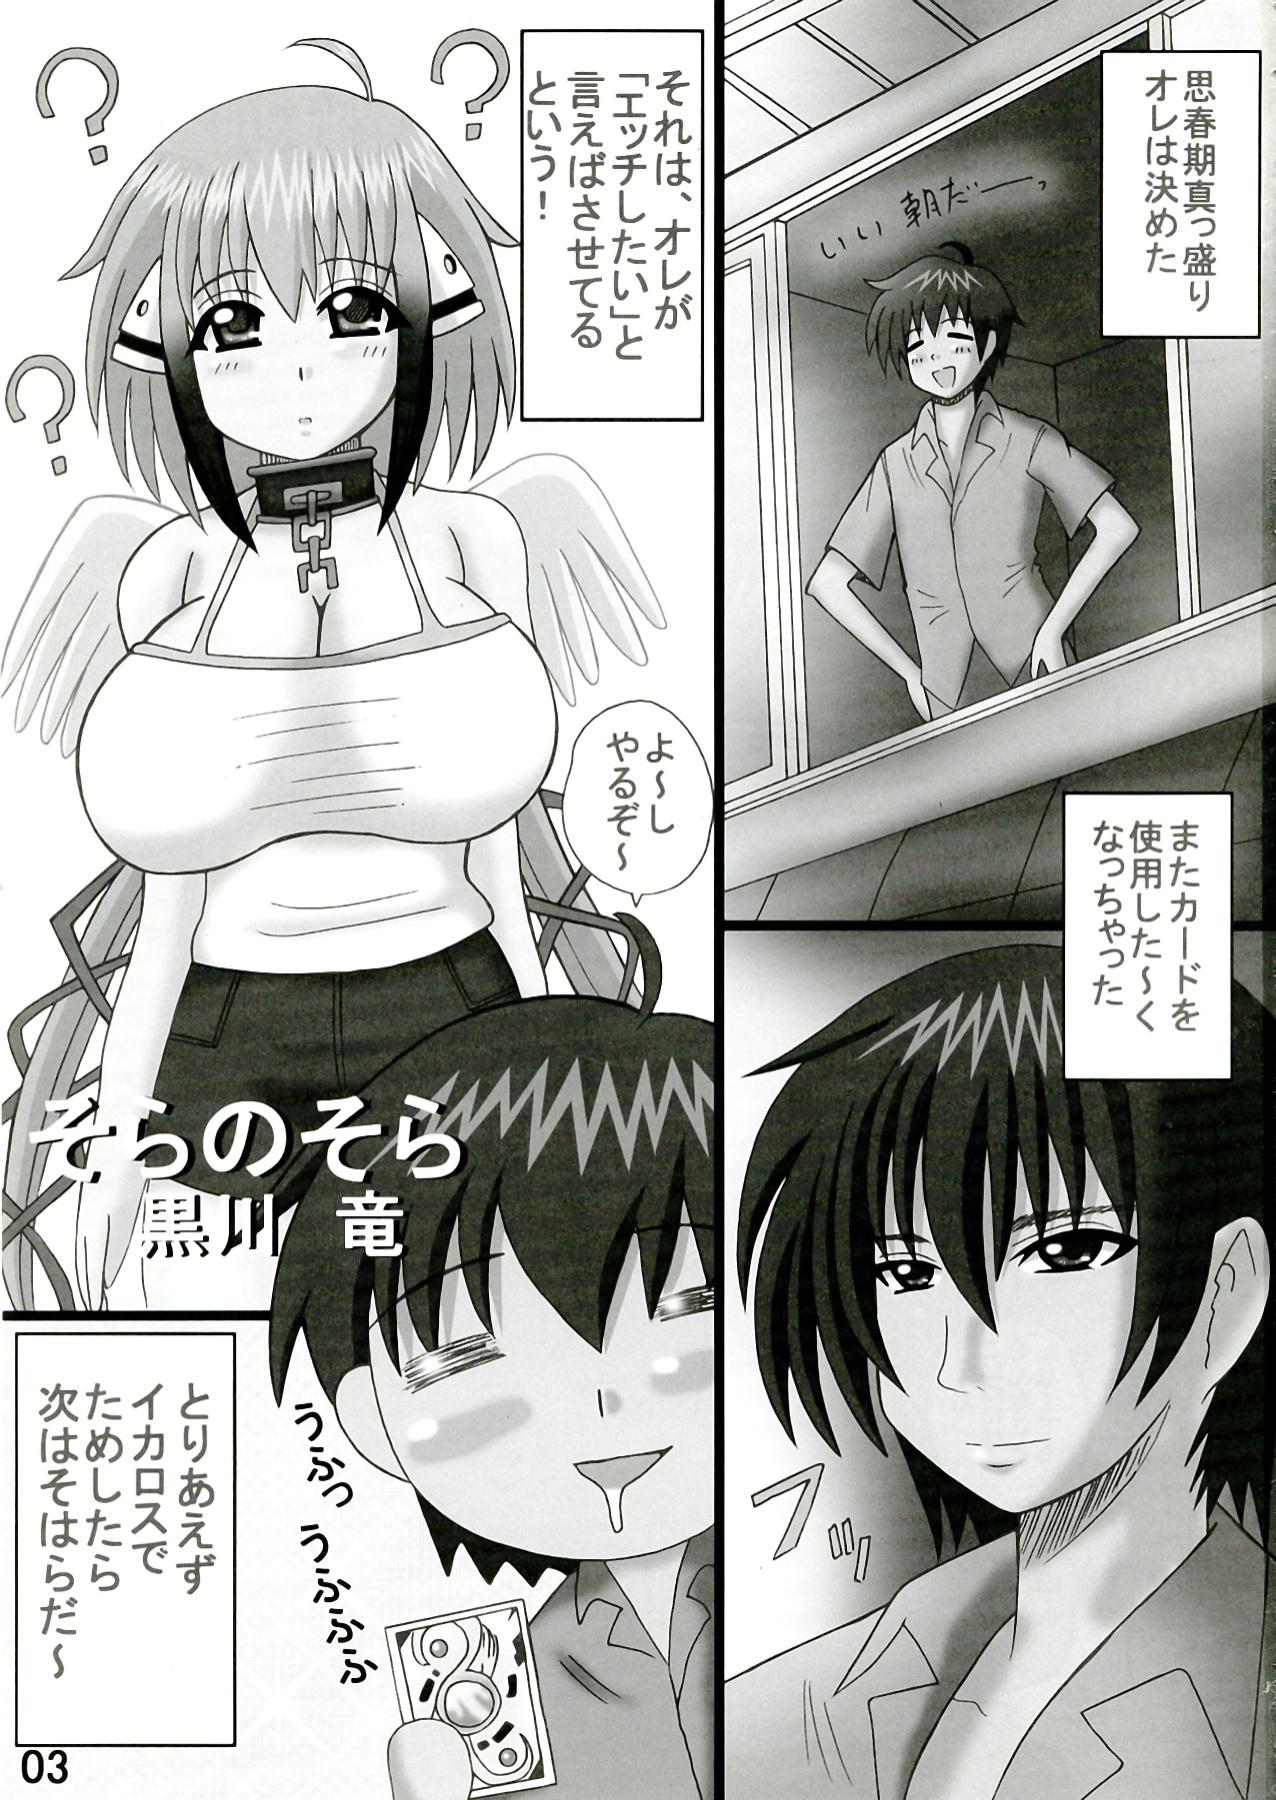 Ex Gf Sora no Sora - Sora no otoshimono Outdoor Sex - Page 3